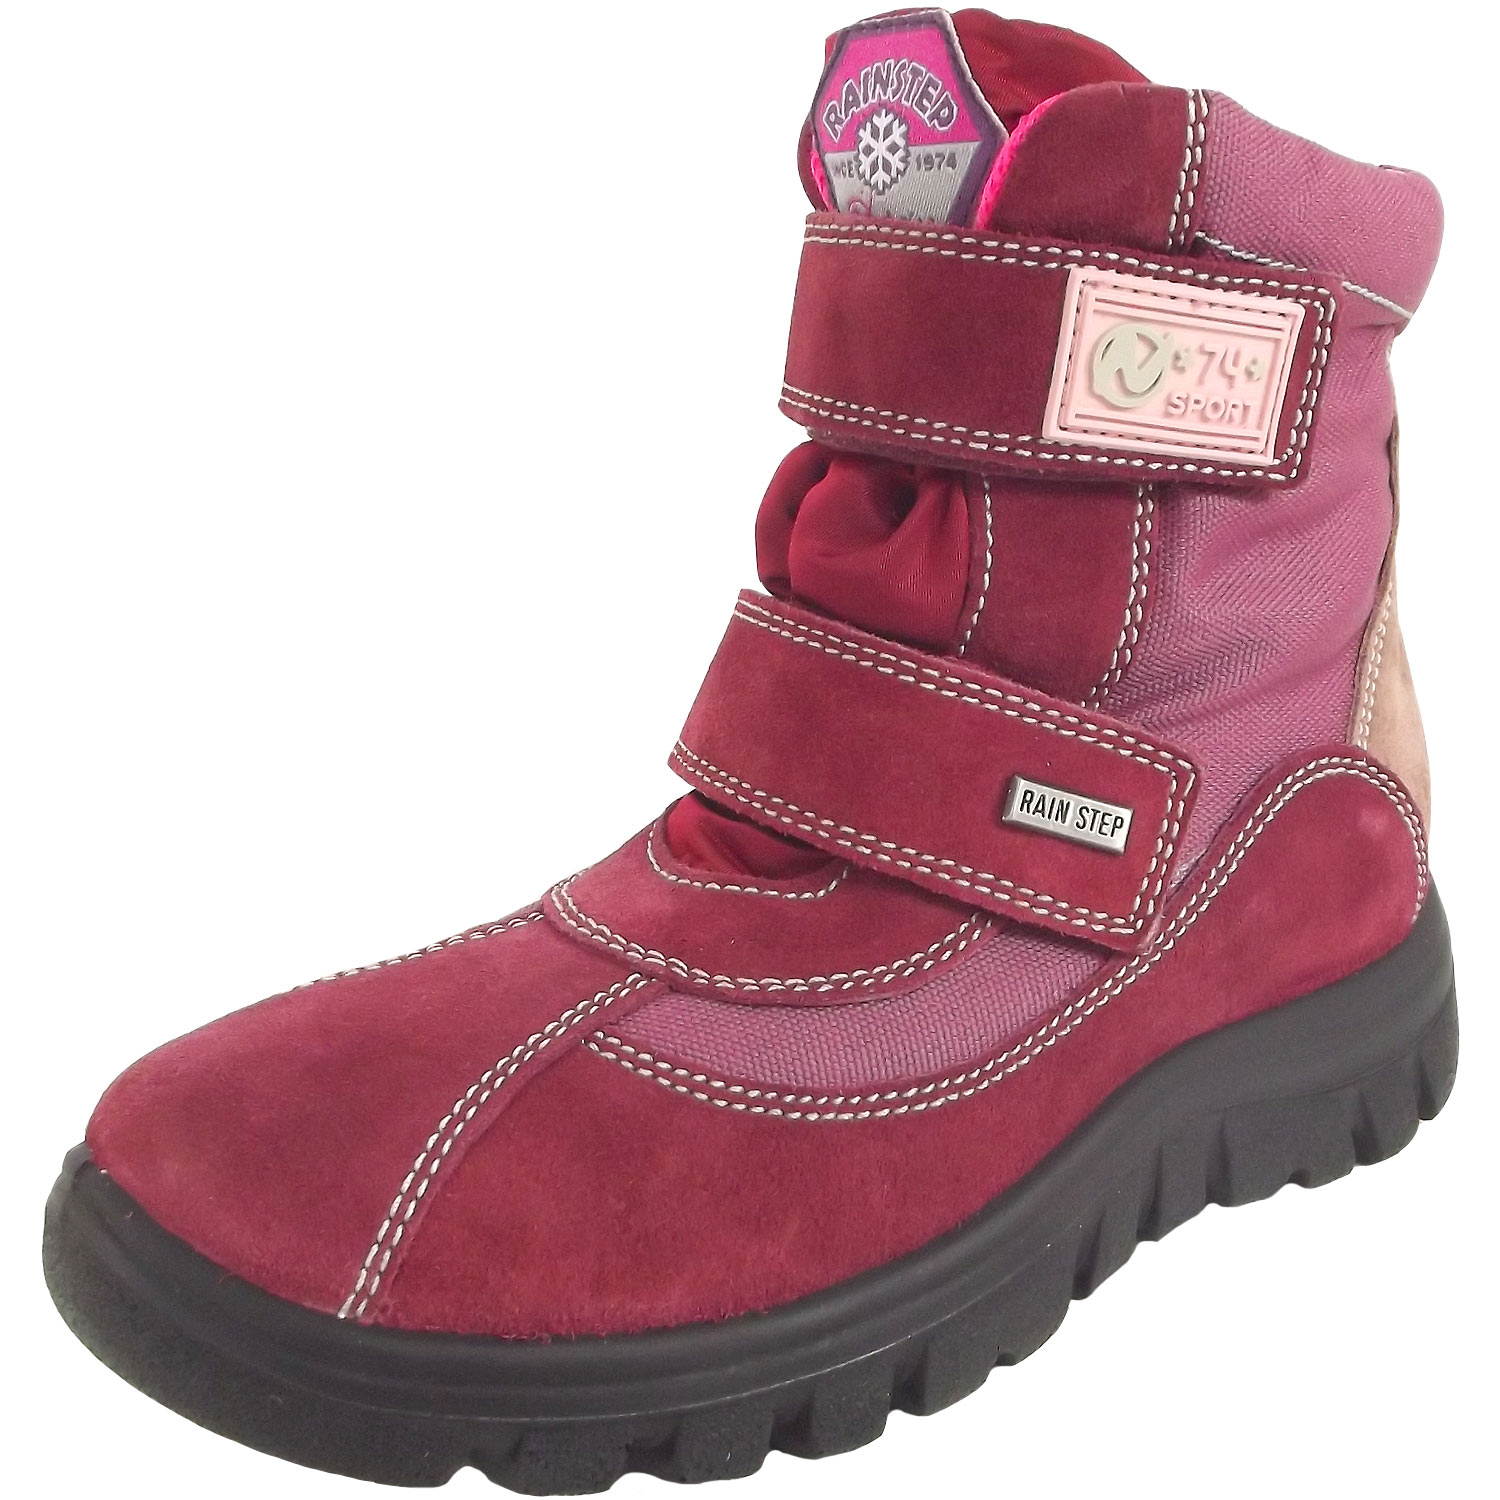 naturino kids boots